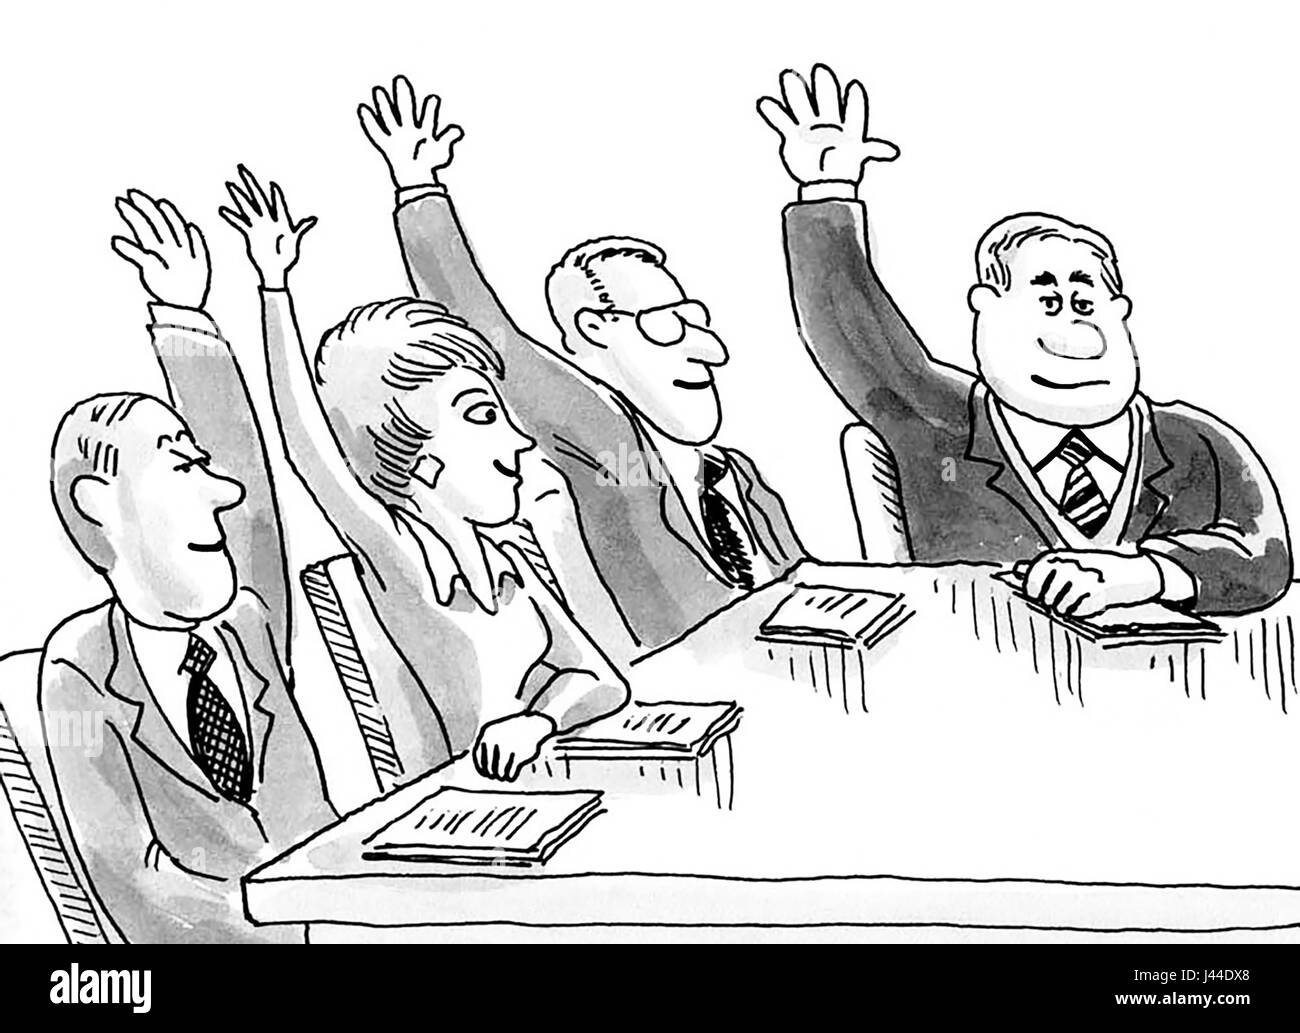 Cartoon illustration montrant les gens d'affaires lors d'une réunion avec leurs bras levés. Banque D'Images